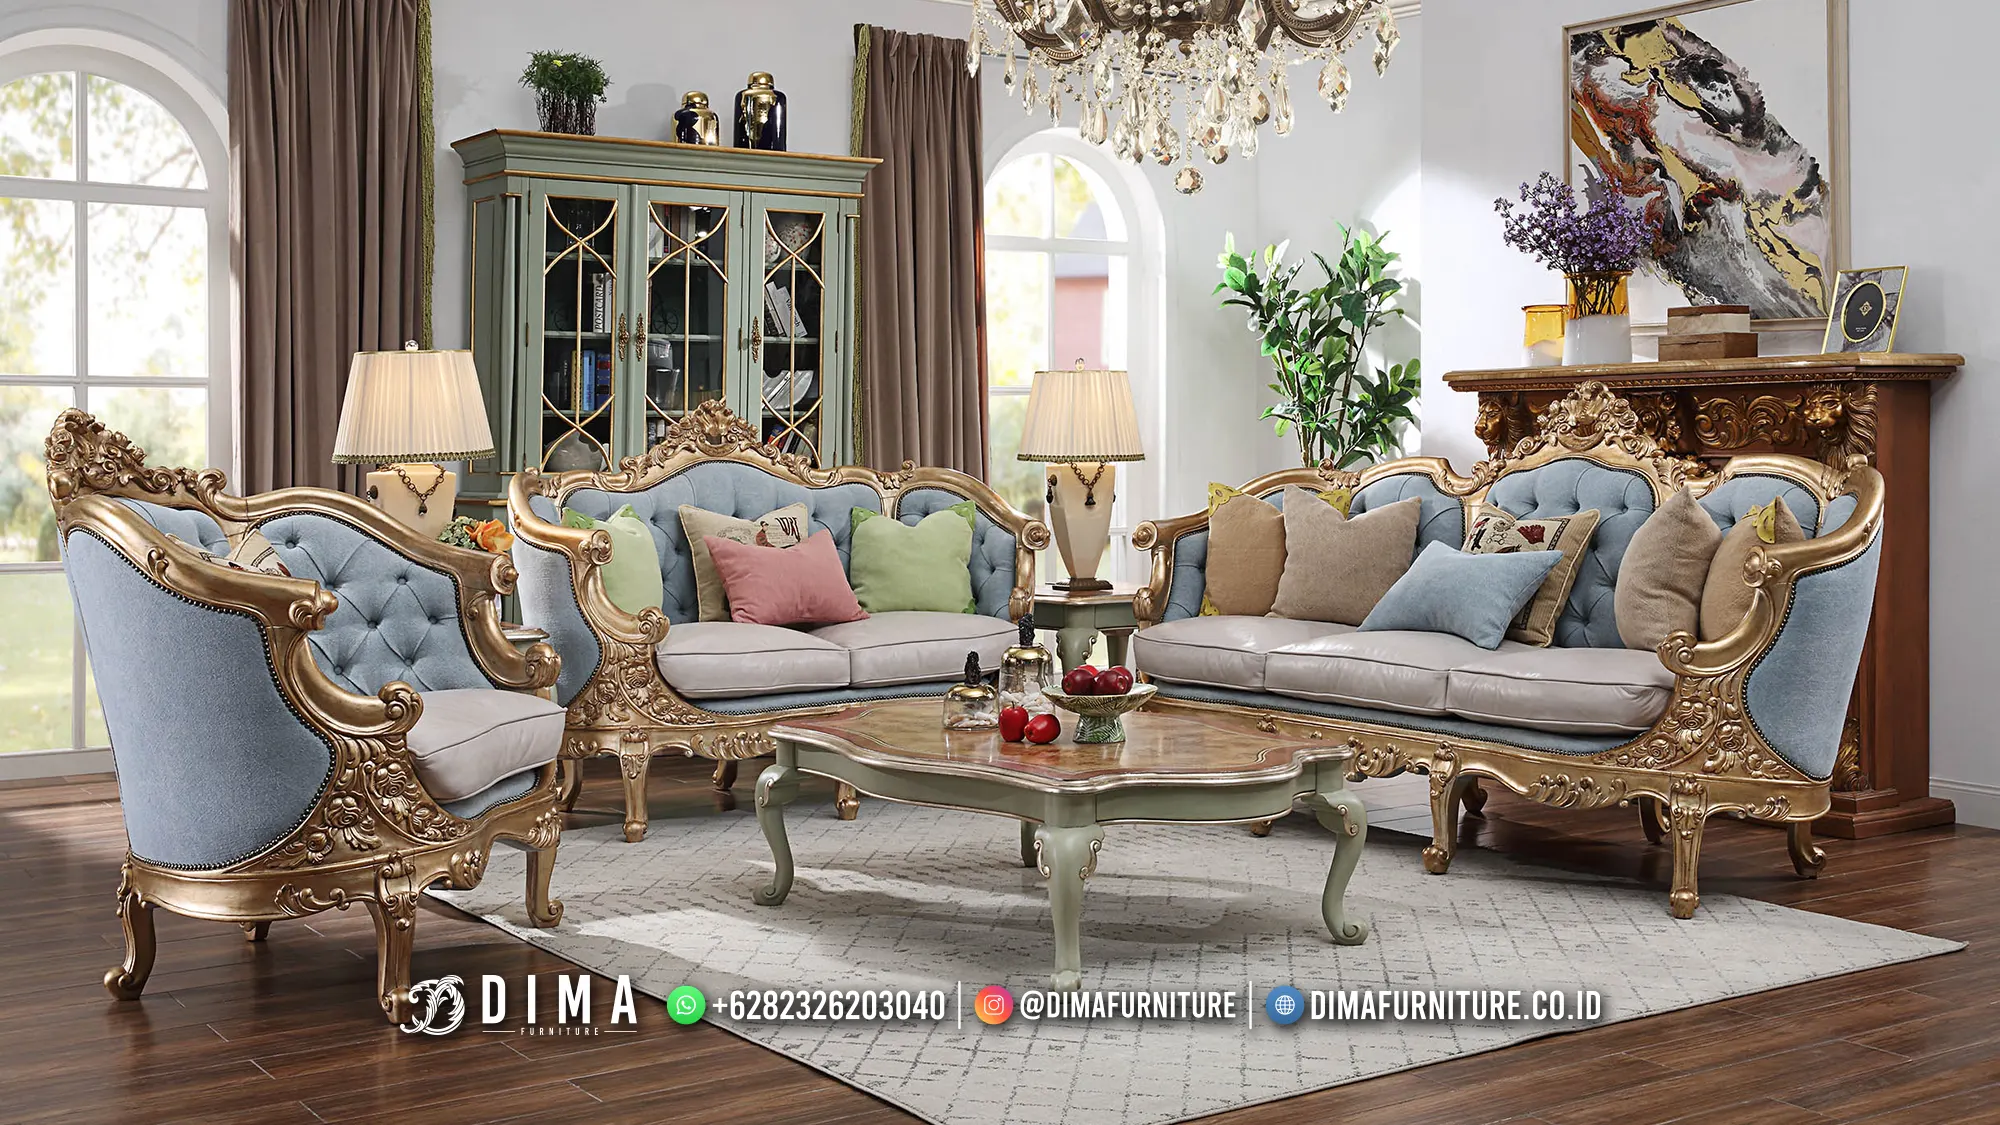 Buy Now Kursi Tamu Mewah - Furniture Ruang Tamu Jepara Naomi BT-2071